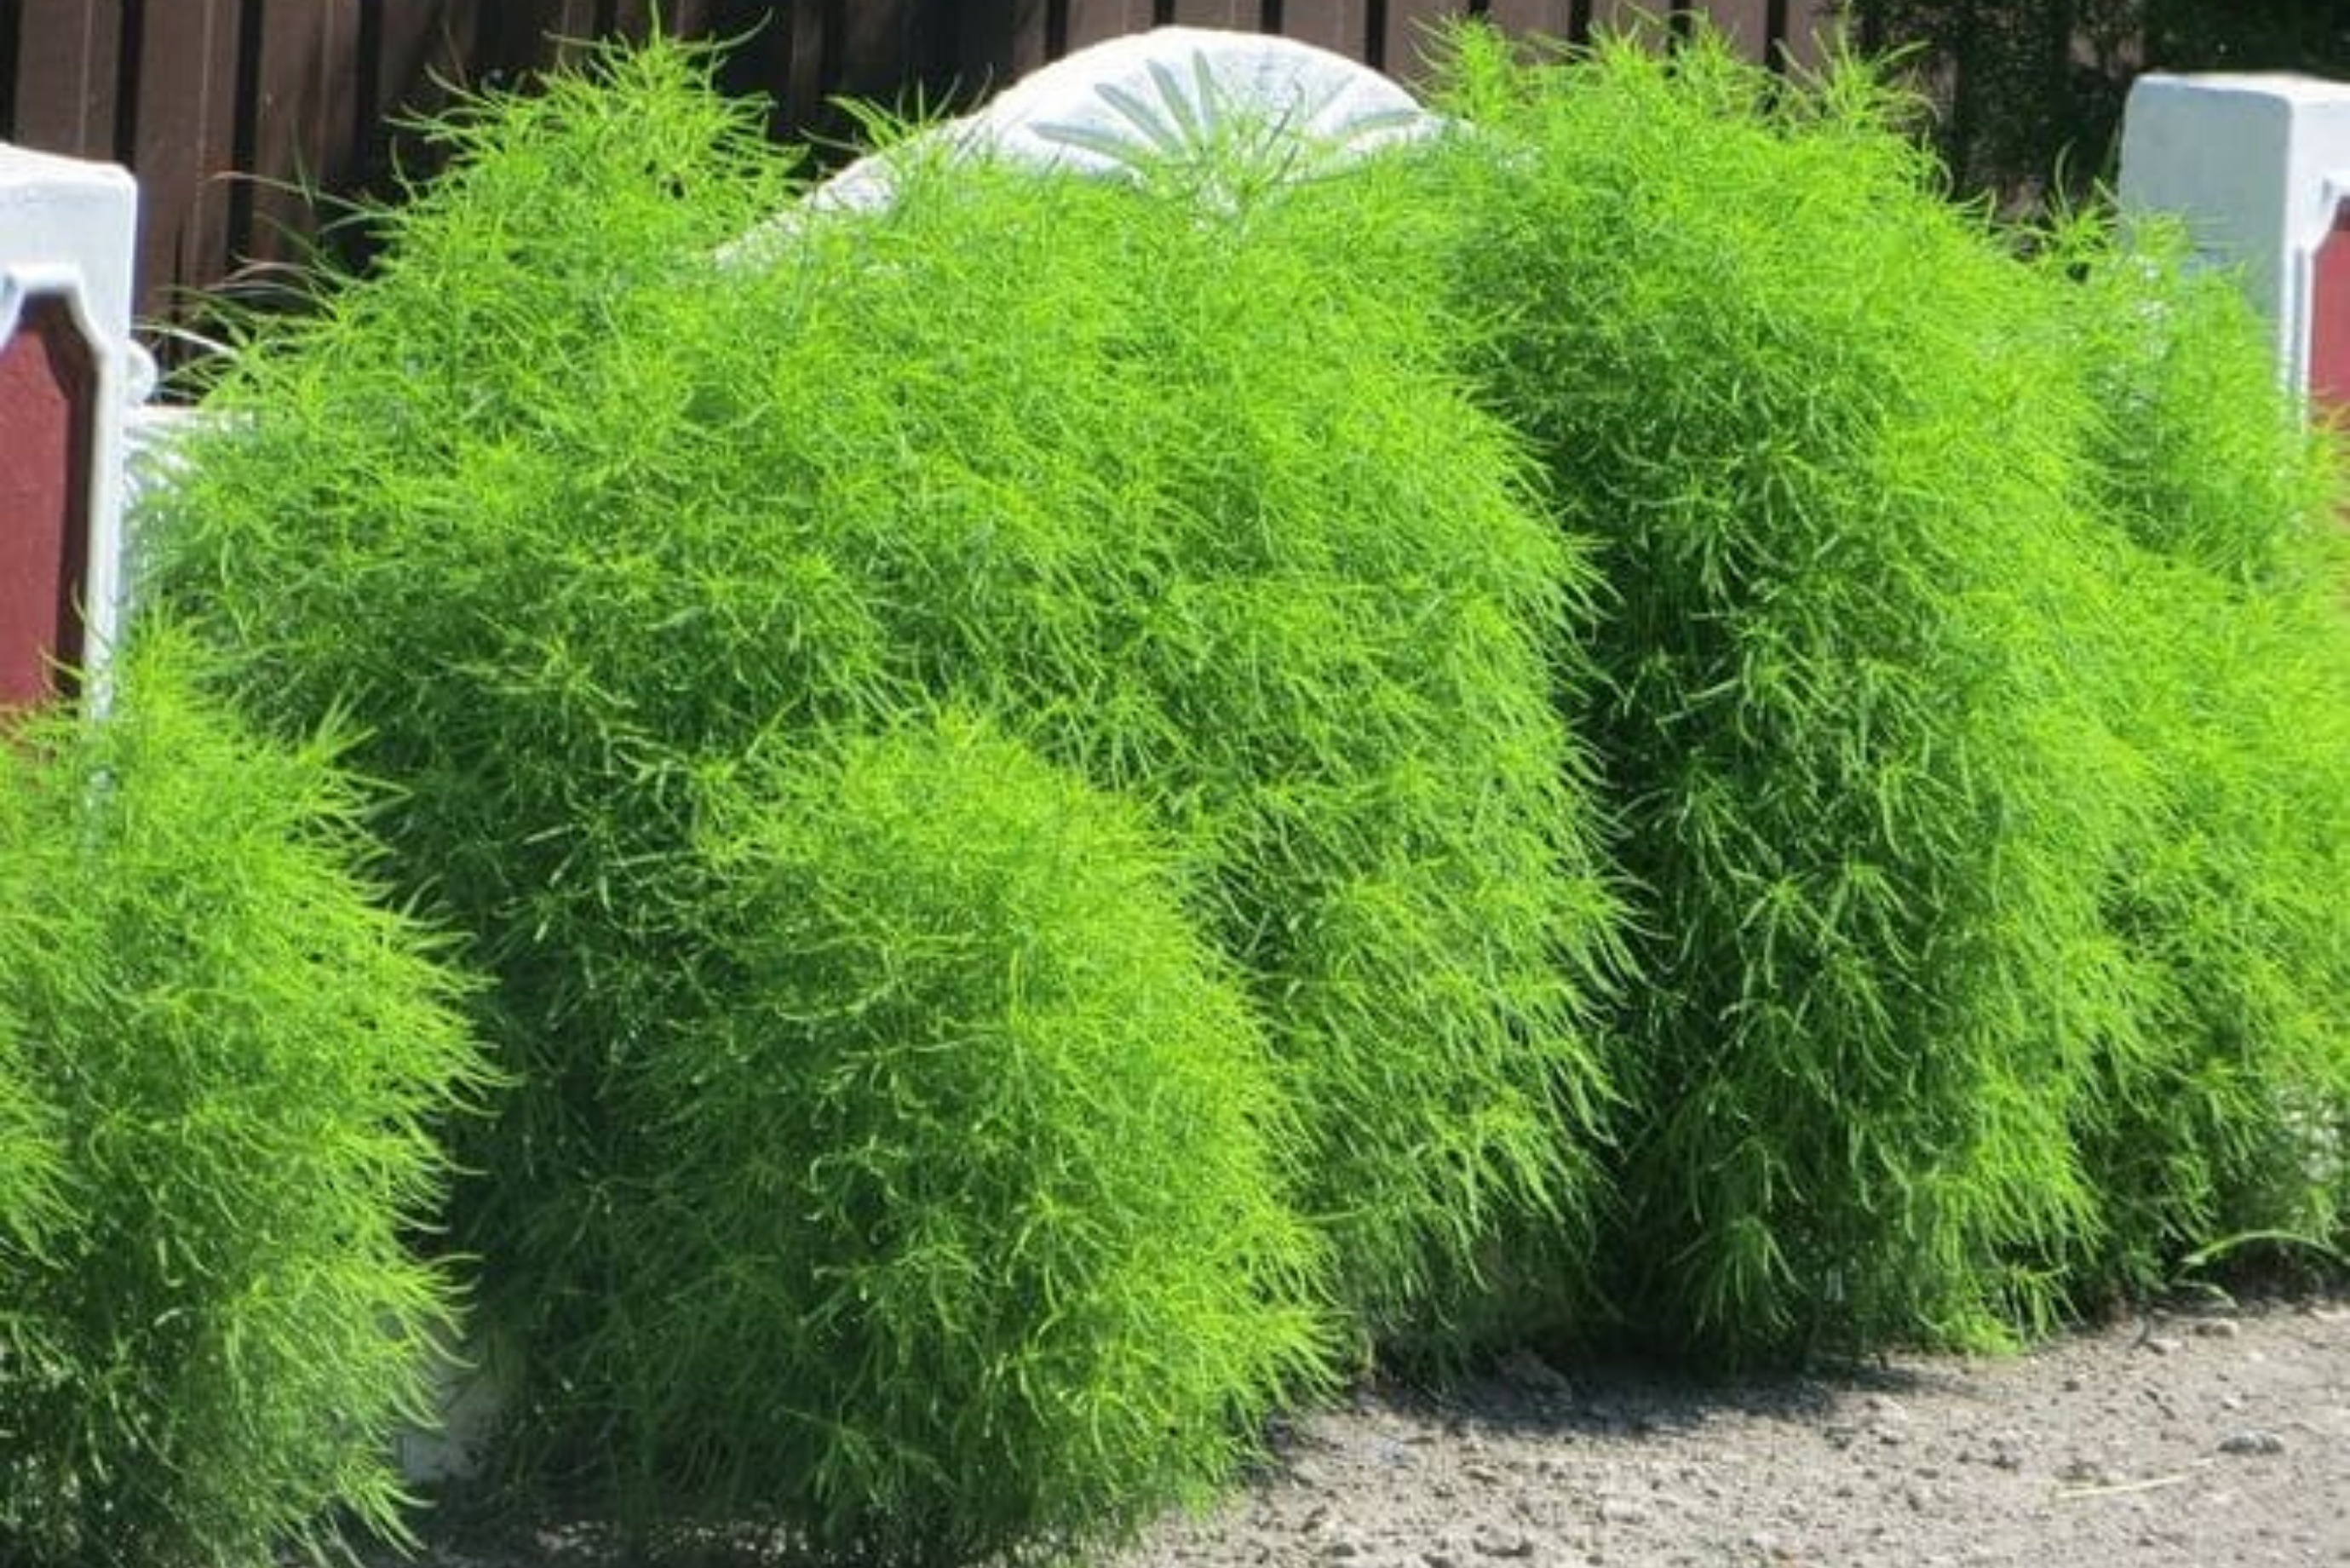 У садоводов довольно большой популярностью пользуется быстрорастущее лианоподобное растение кирказон, которое отличается эффектными крупными листовыми пластинами